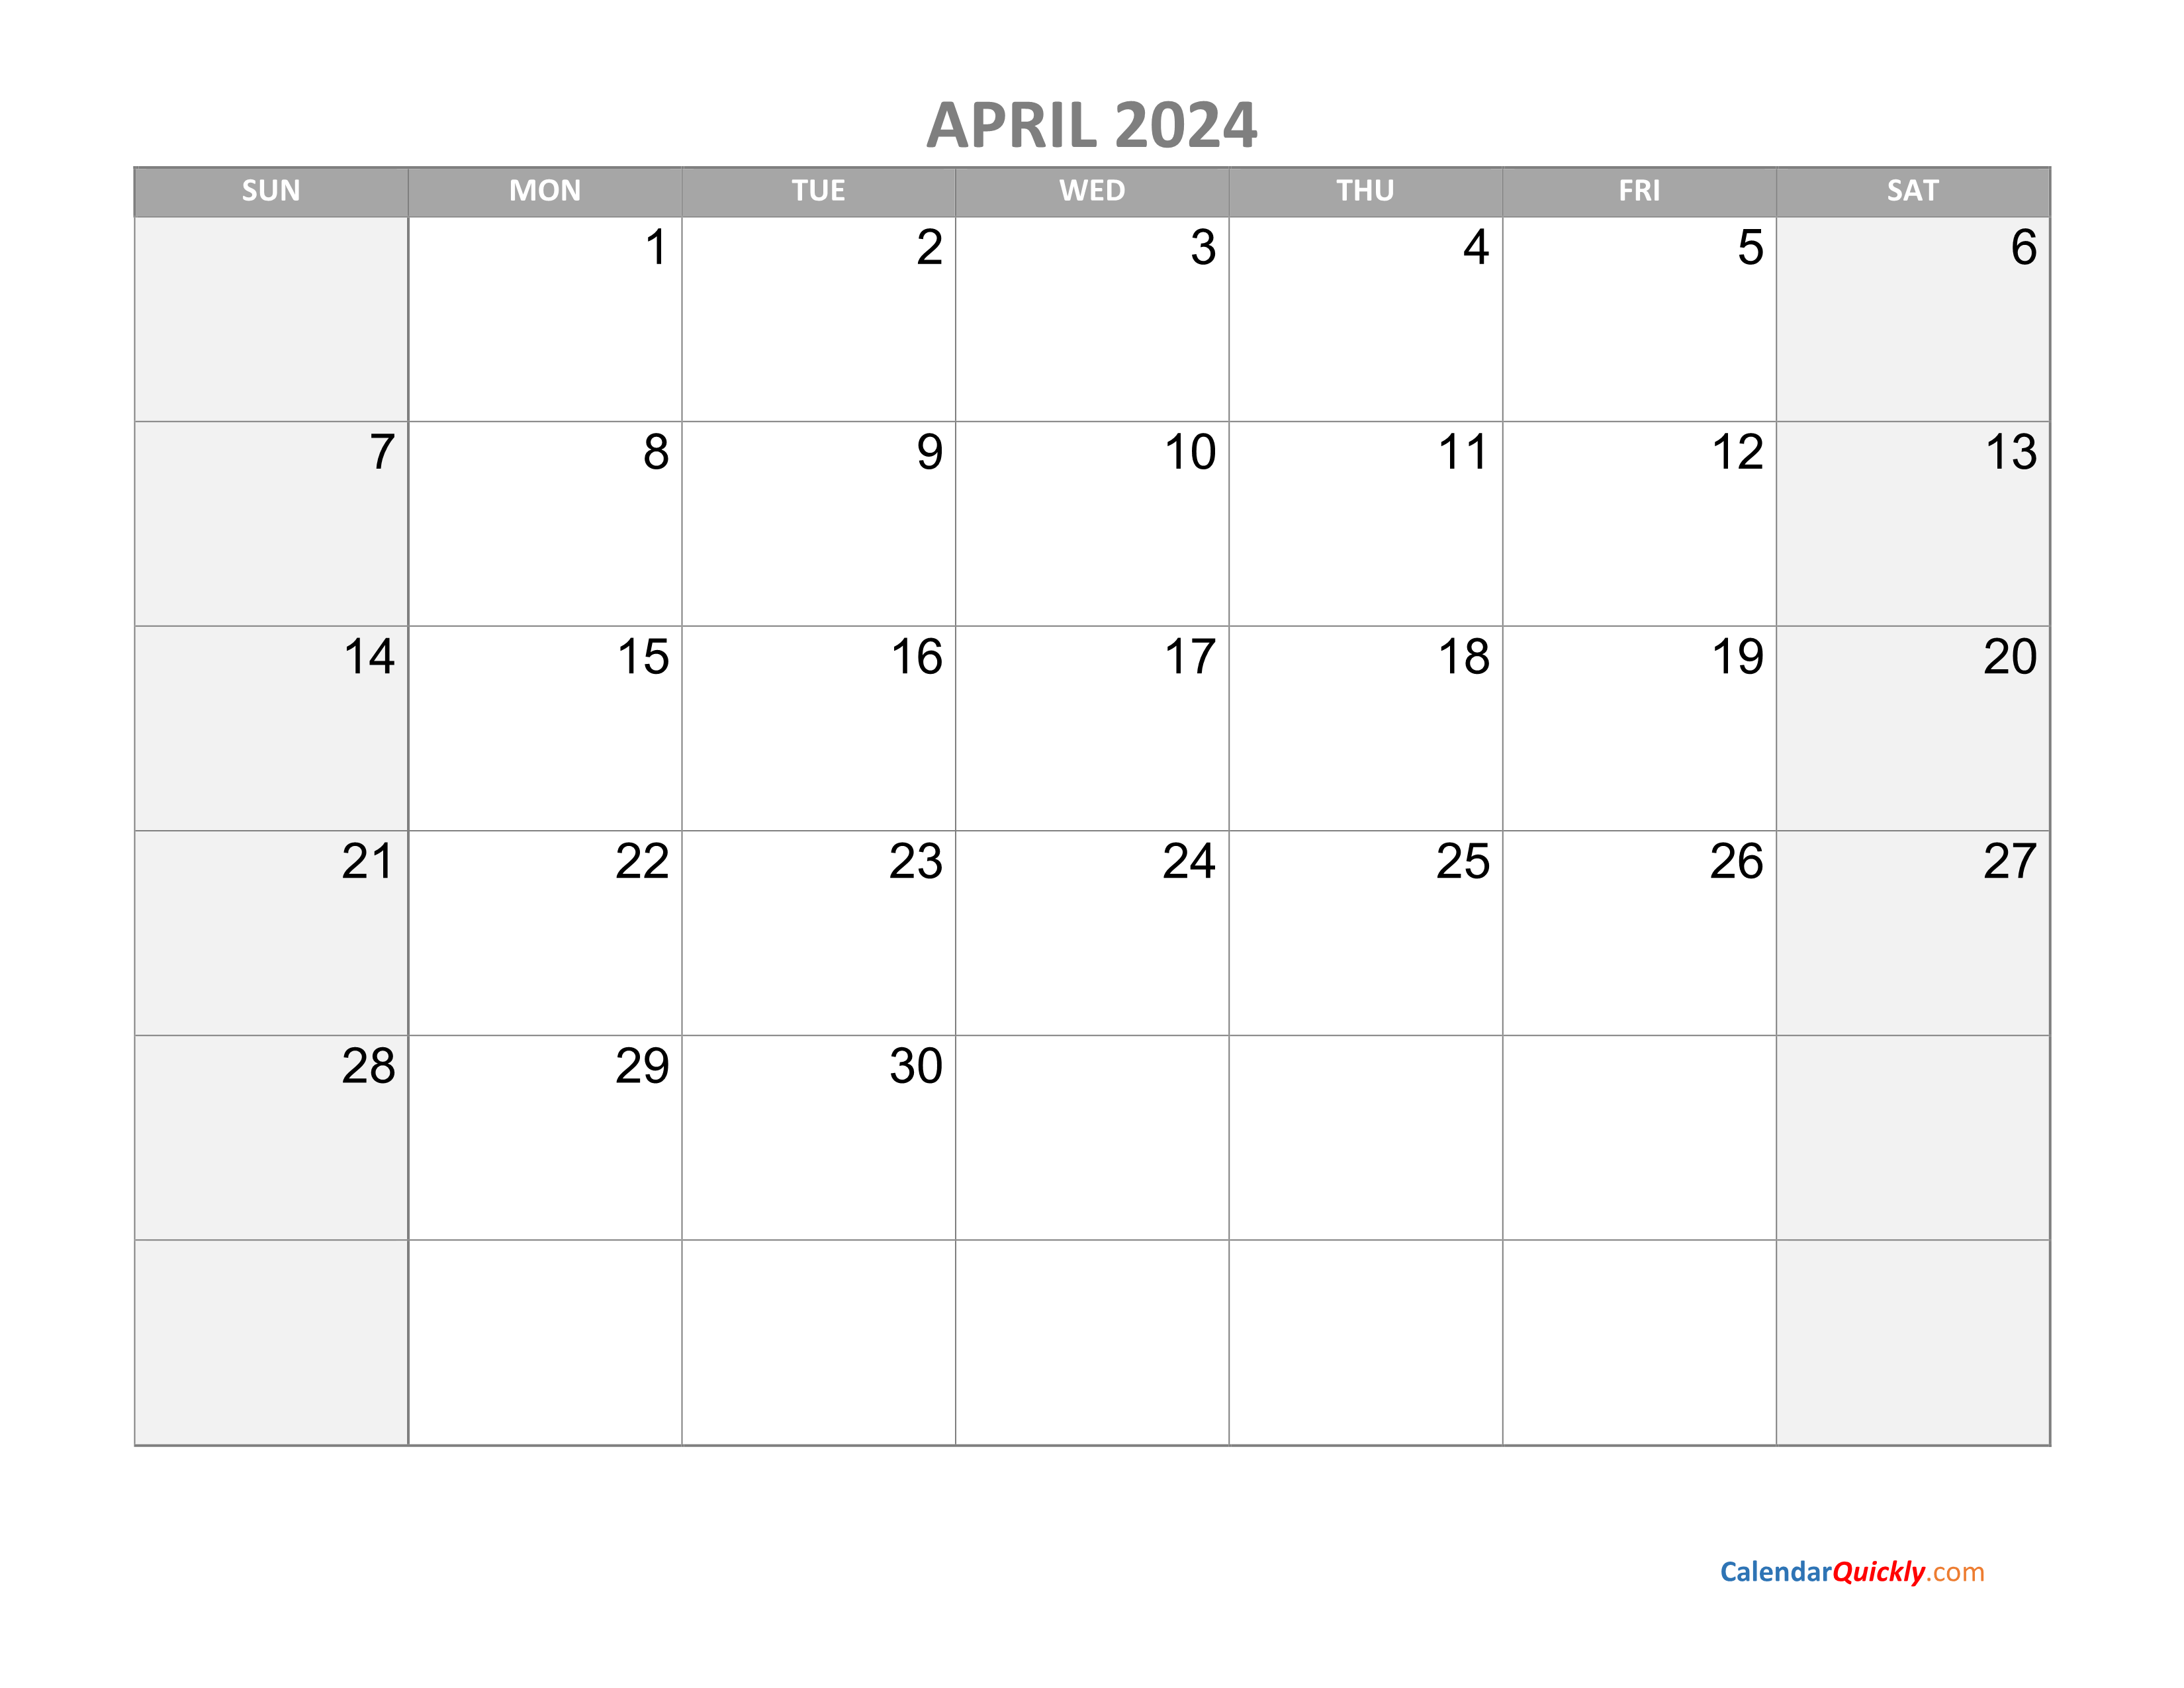 April Calendar 2024 with Holidays Calendar Quickly